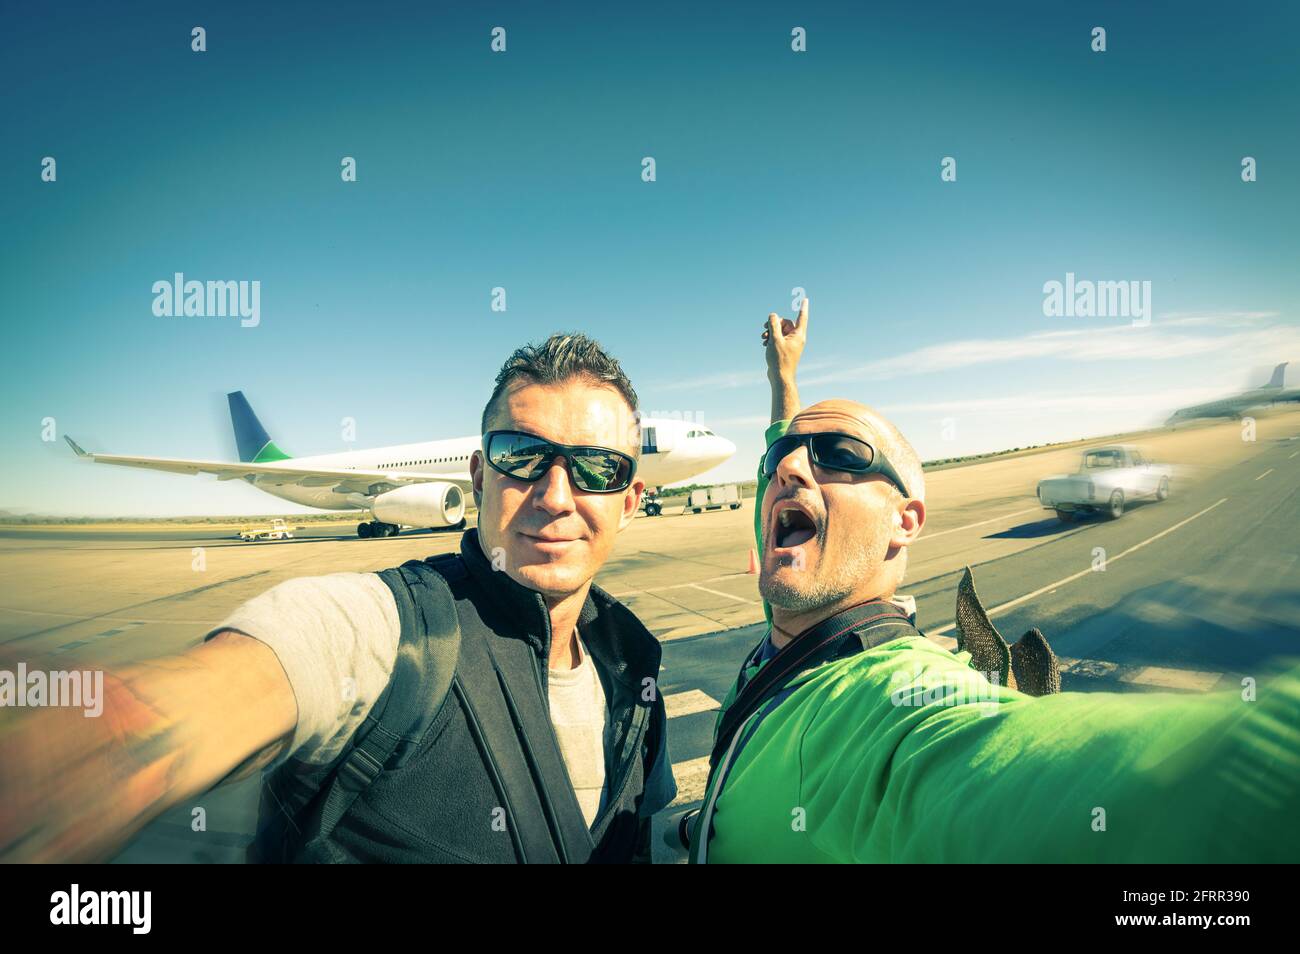 Moderne Hipster junge Freunde, die ein Selfie am internationalen Flughafen machen - Abenteuer Reise Lebensstil genießen Moment und teilen Glück Stockfoto